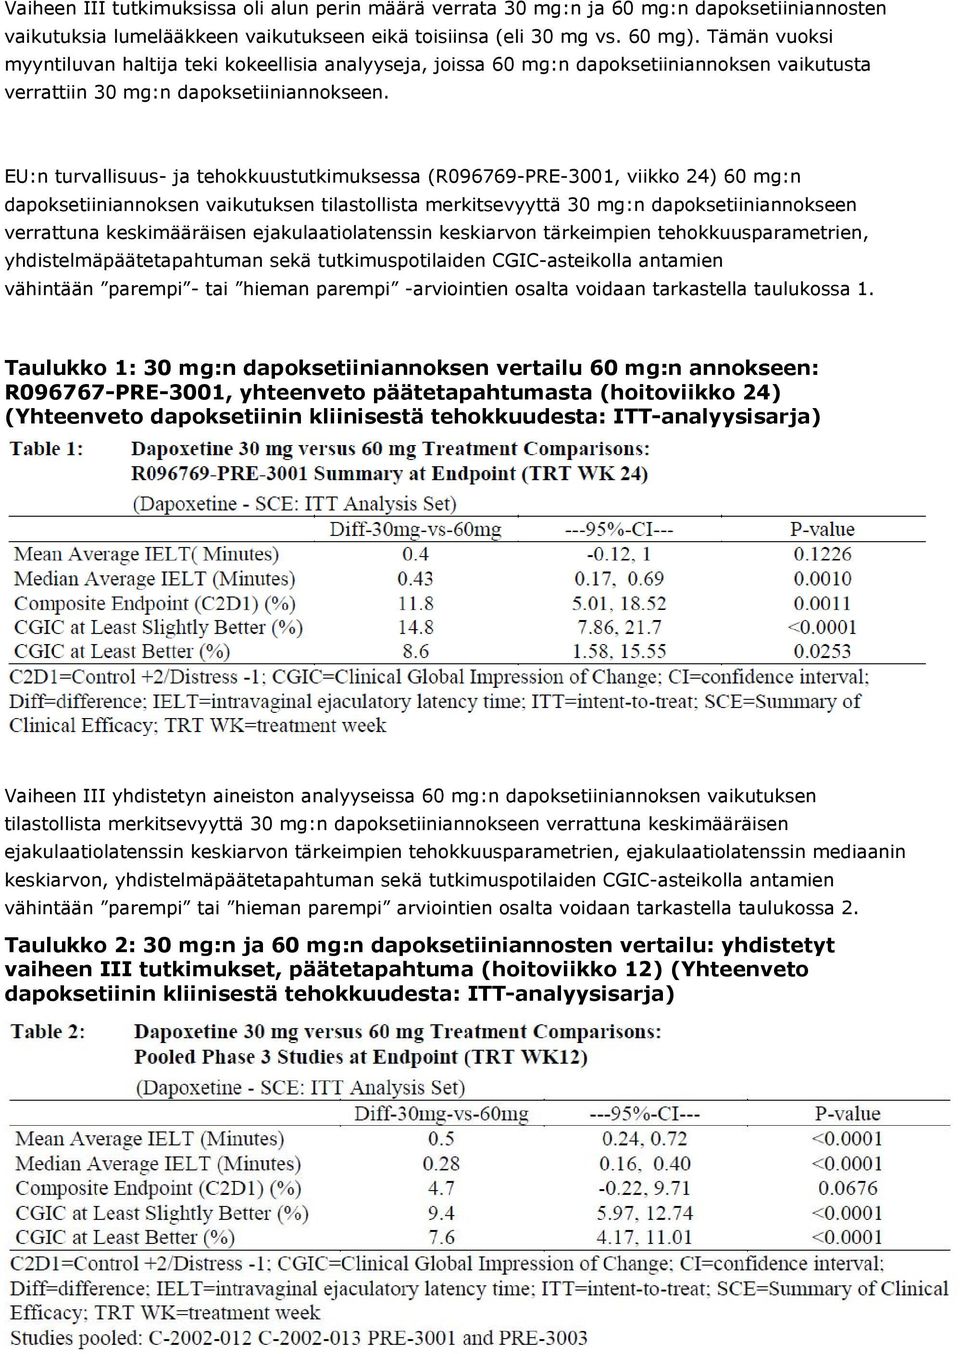 EU: turvallisuus- ja tehokkuustutkimuksessa (R096769-PRE-3001, viikko 24) 60 mg: dapoksetiiiaokse vaikutukse tilastollista merkitsevyyttä 30 mg: dapoksetiiiaoksee verrattua keskimääräise